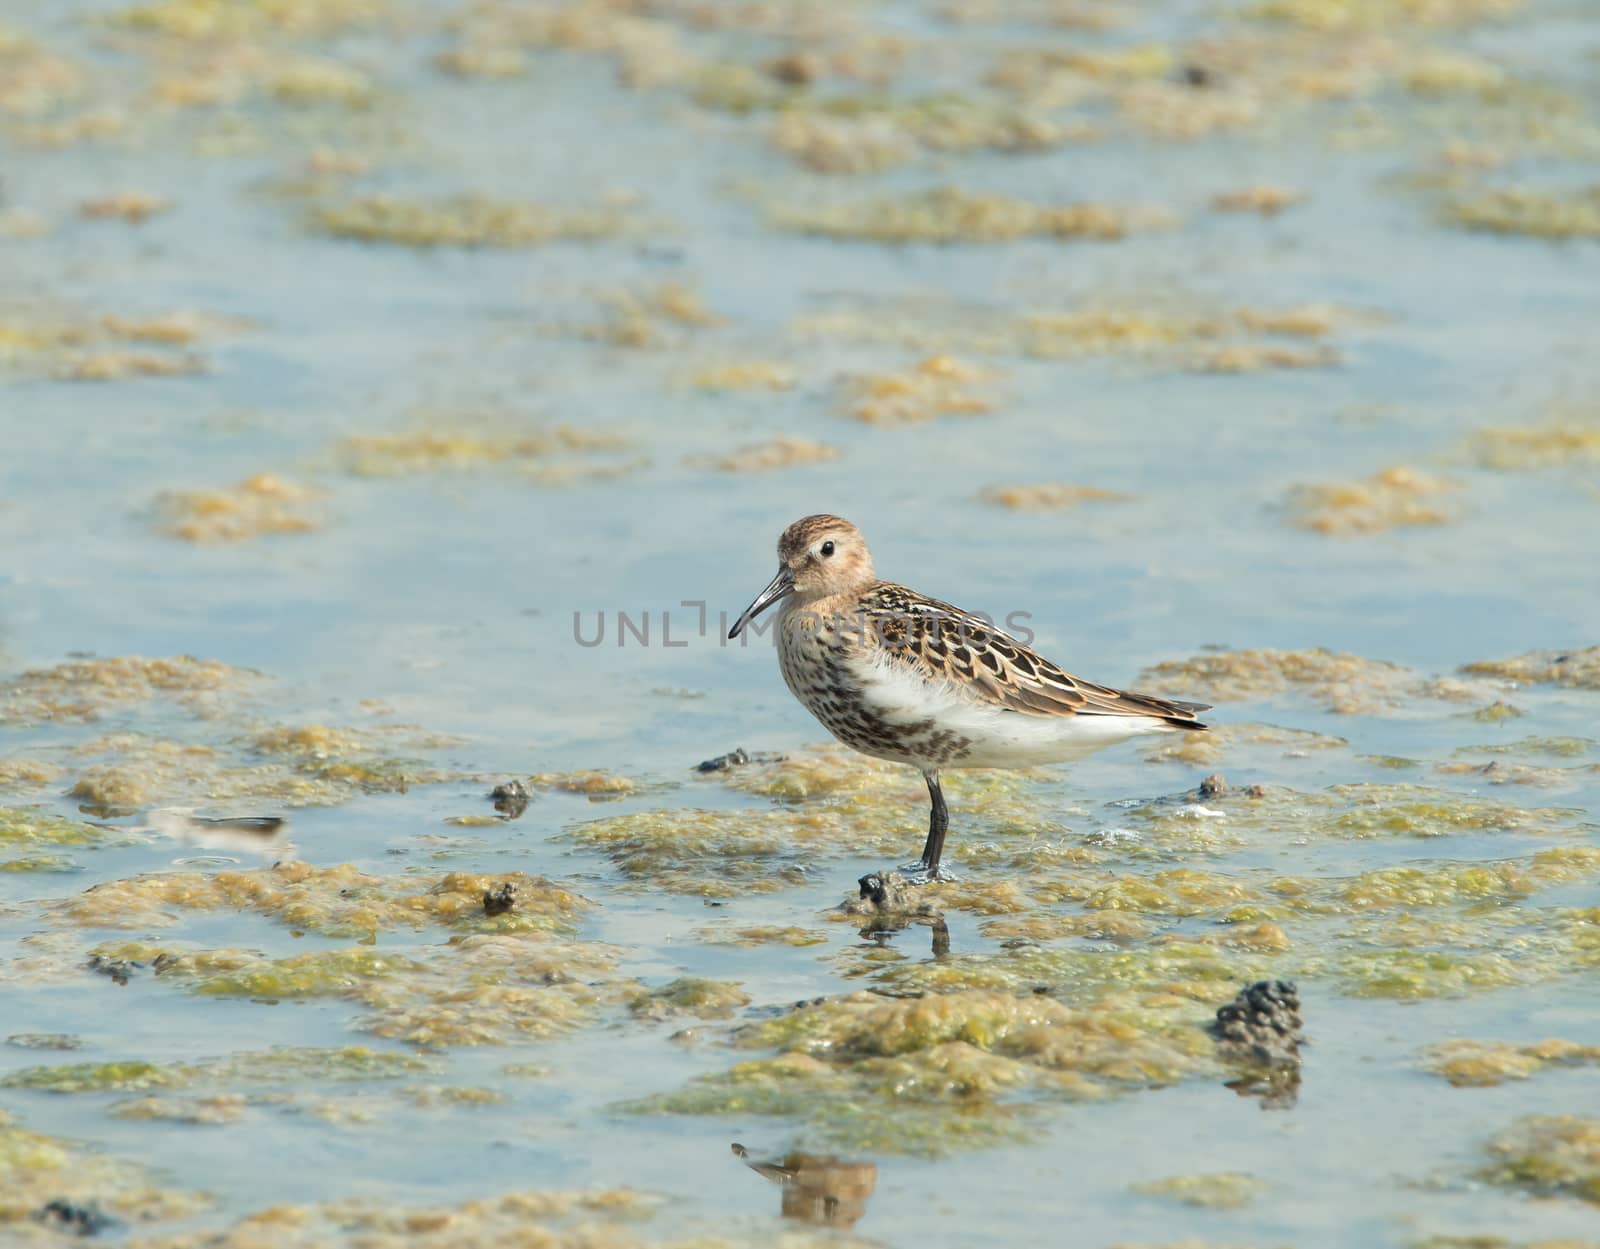 Small wading or shorebird Dunlin